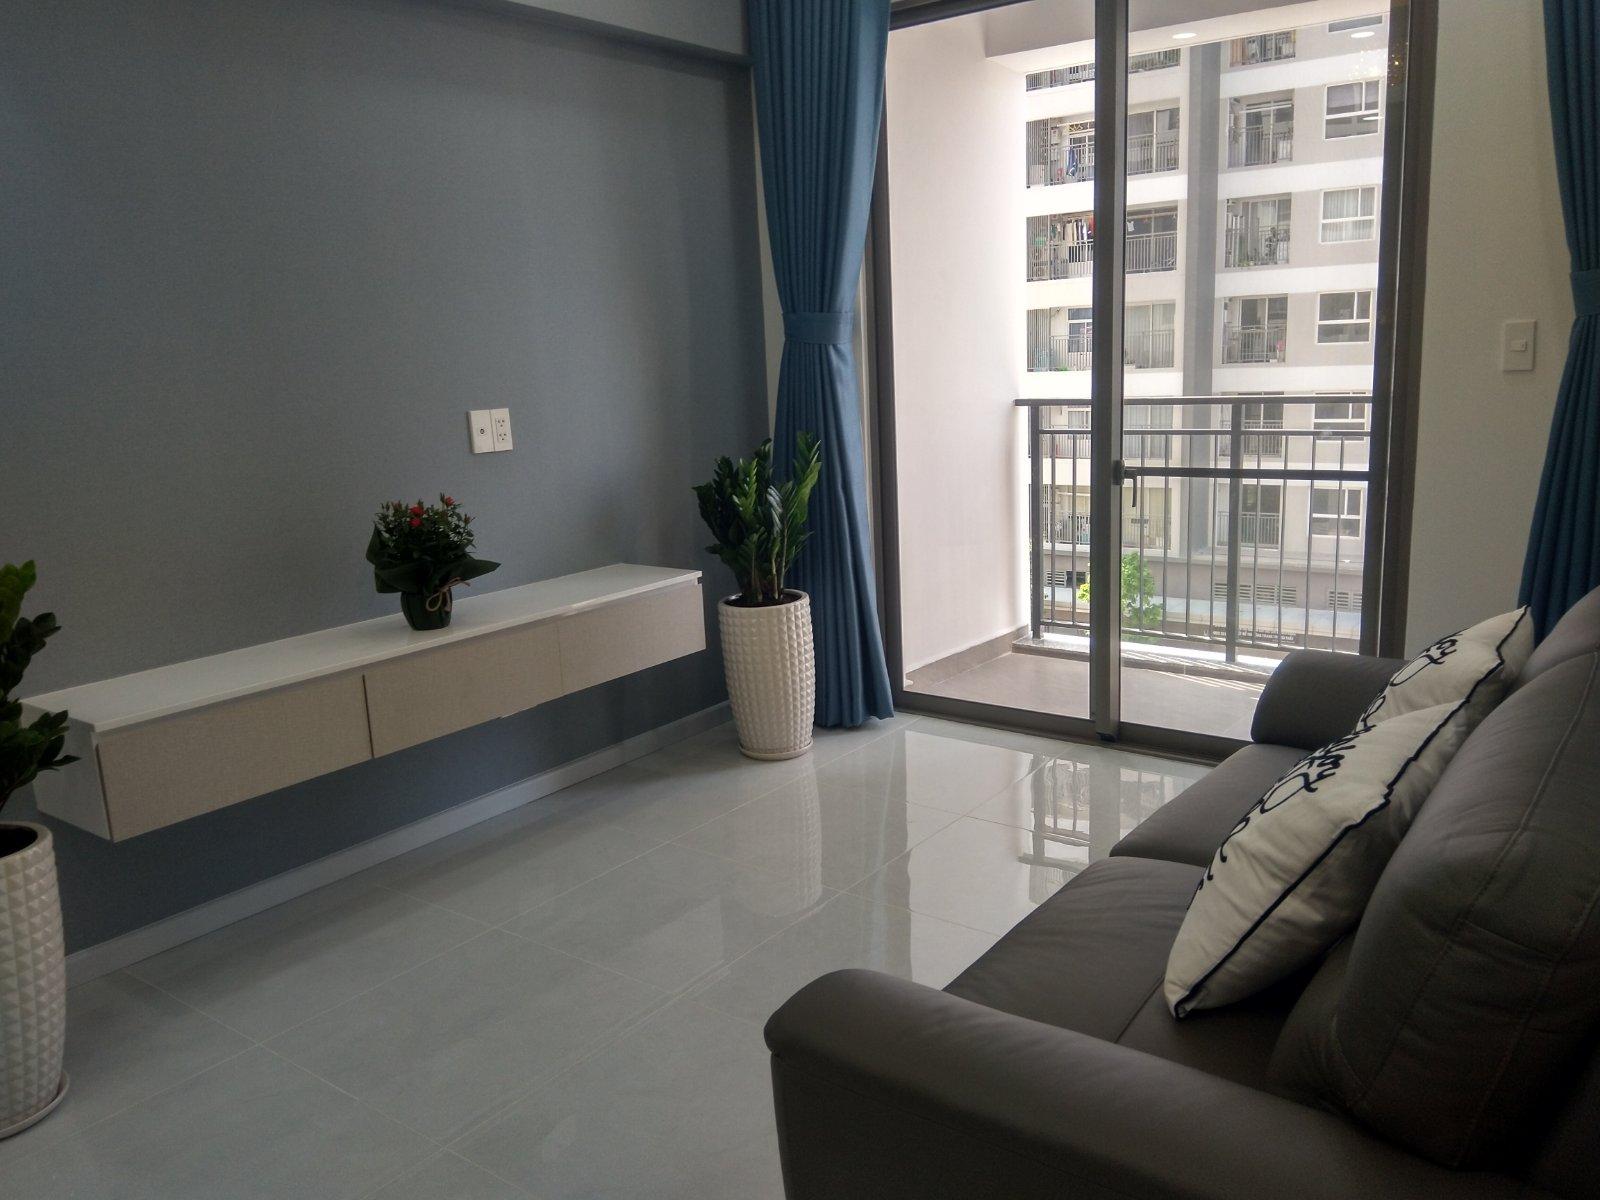 Quản lý cho thuê 100% căn hộ Sài Gòn South Residence 2PN, 3PN giá tốt nhất thị trường